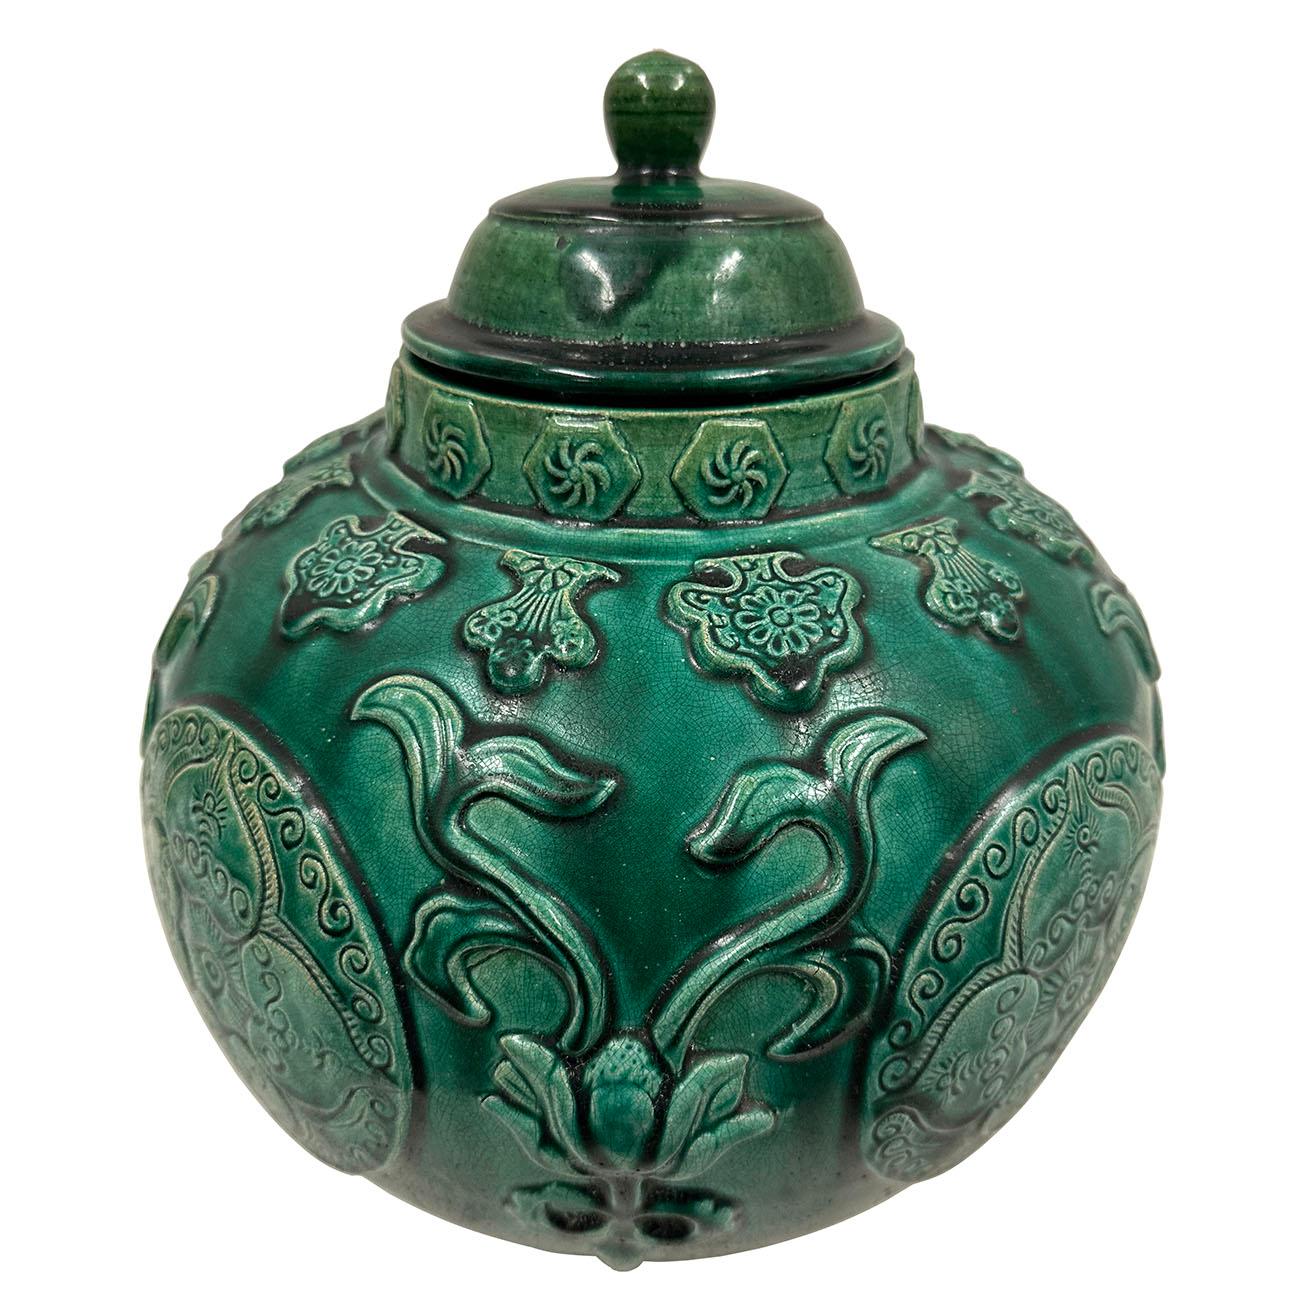 

Mit detaillierten, handgeschnitzten Feng Shui-Mustern ist dieses pfauengrün glasierte Keramikgefäß einzigartig. Es ist ein perfektes dekoratives Element in jedem Haus. Die Bilder sagen alles. Die Patina und die Altersspuren zeigen seine